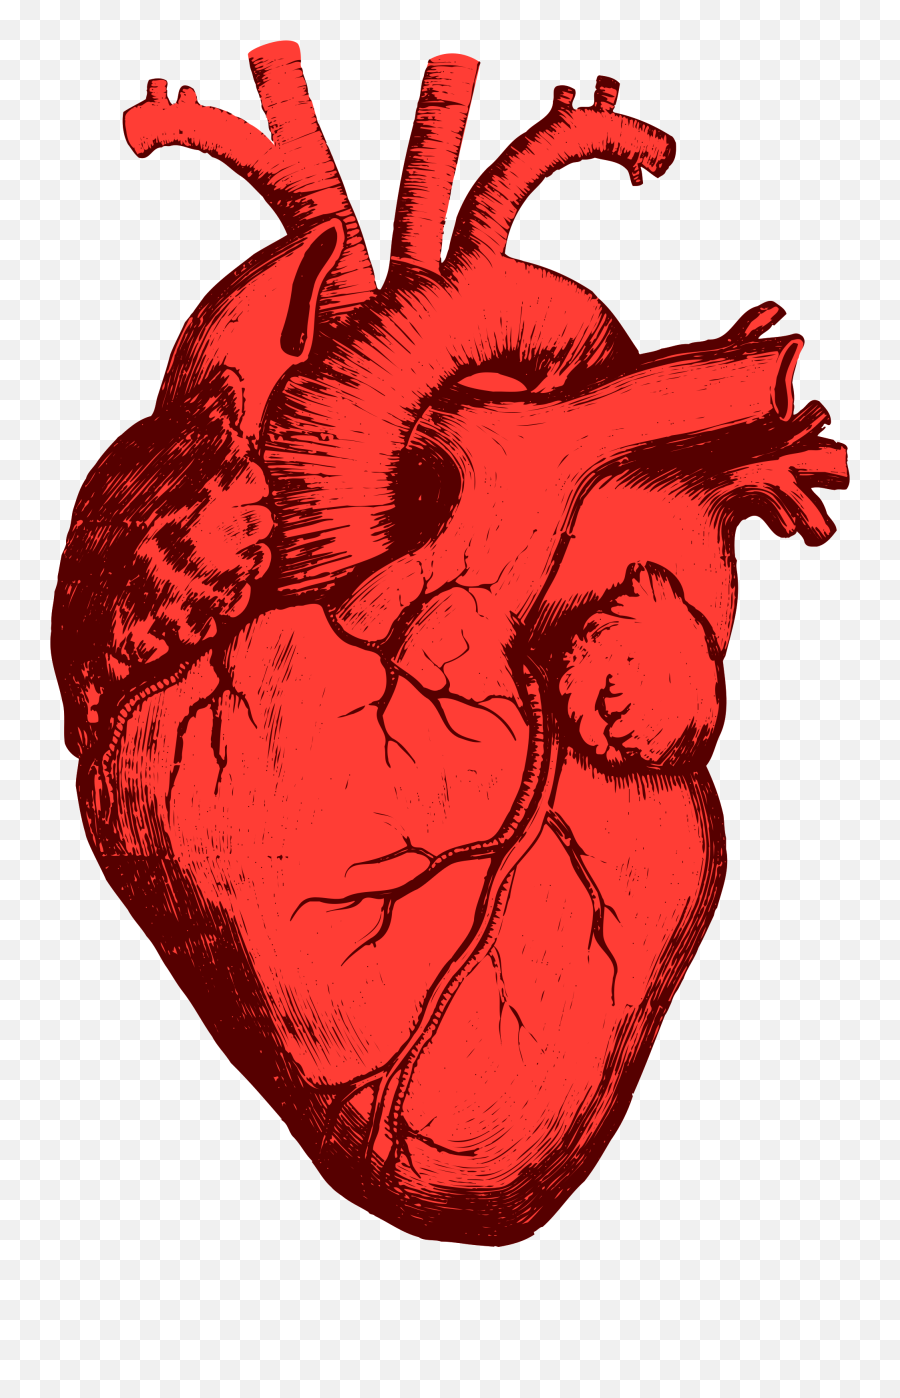 A Shovel Iii Transparent Png Image - Heart Organ Transparent Background Emoji,Shovel Emoji